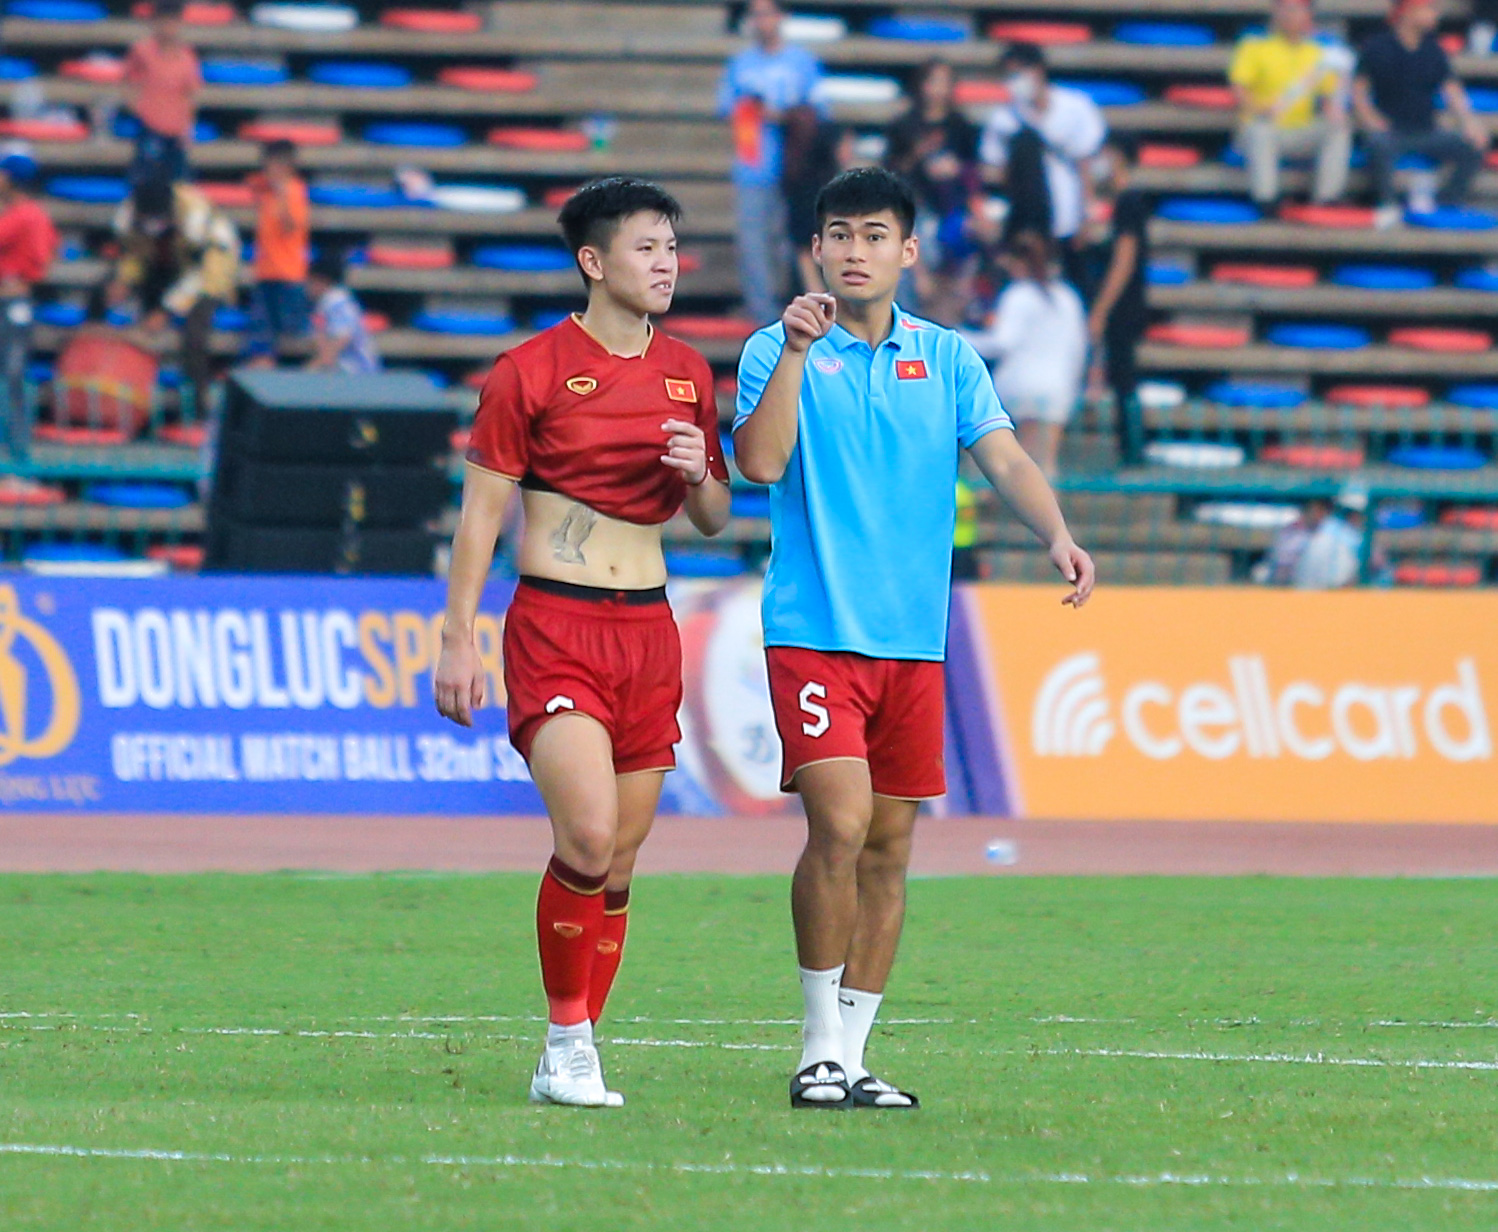 Cảm xúc trái ngược sau trận đấu: U22 Việt Nam hân hoan, cầu thủ U22 Myanmar đổ gục sau khi tuột HCĐ - Ảnh 7.